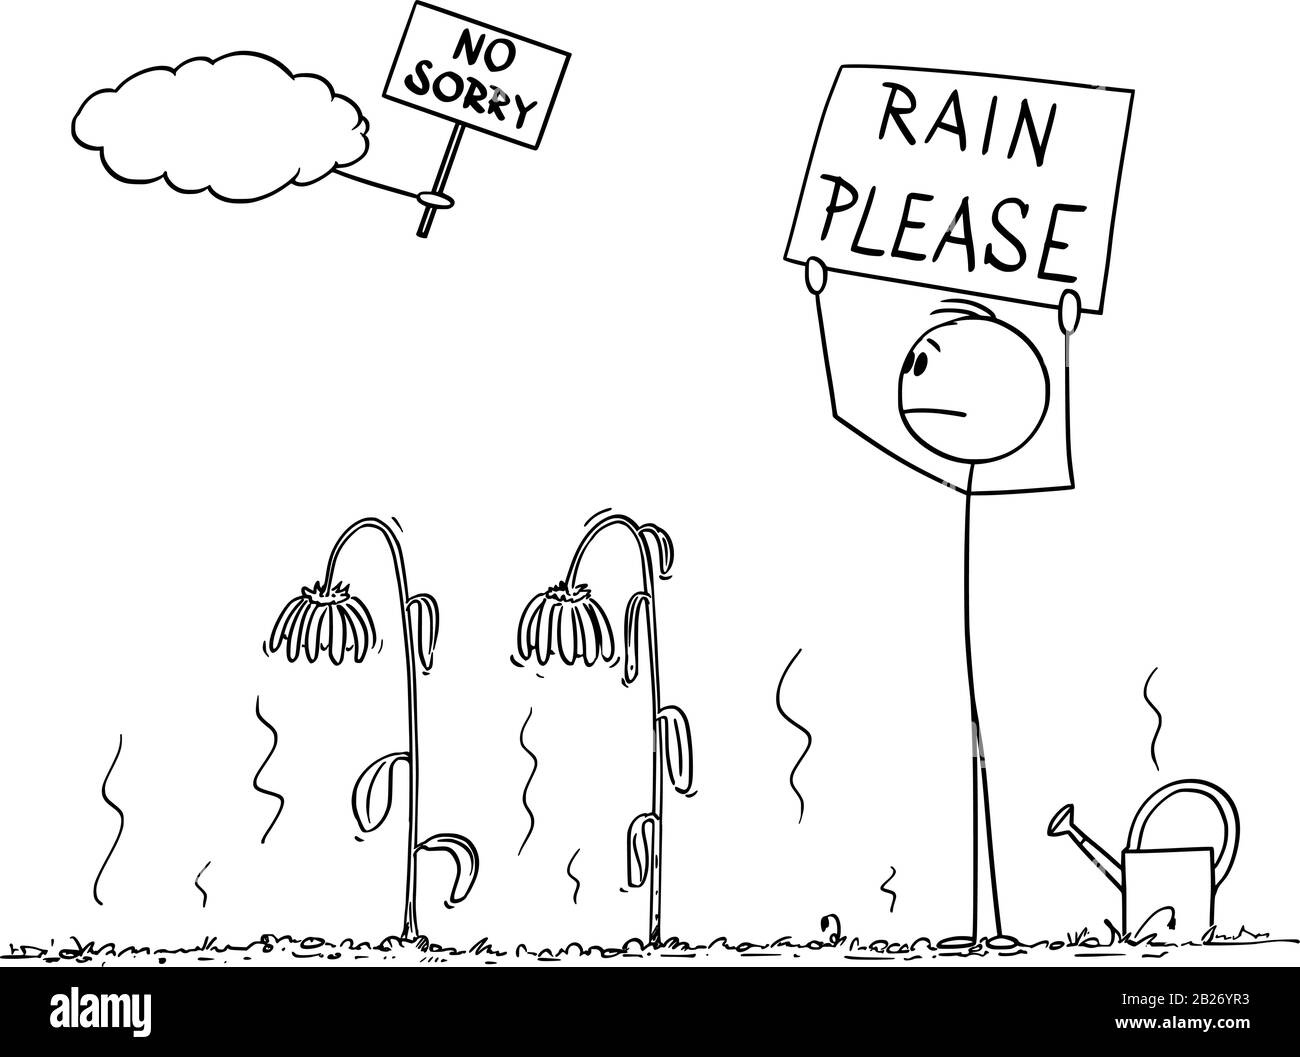 Vektor-Zeichentrickfigur Zeichnung konzeptionelle Illustration von Mann oder Gärtner auf Garten mit ausgetrockneten Pflanzen Blick auf den Himmel und Regen bitte unterschreiben, Wolke sagt nicht leid. Stock Vektor